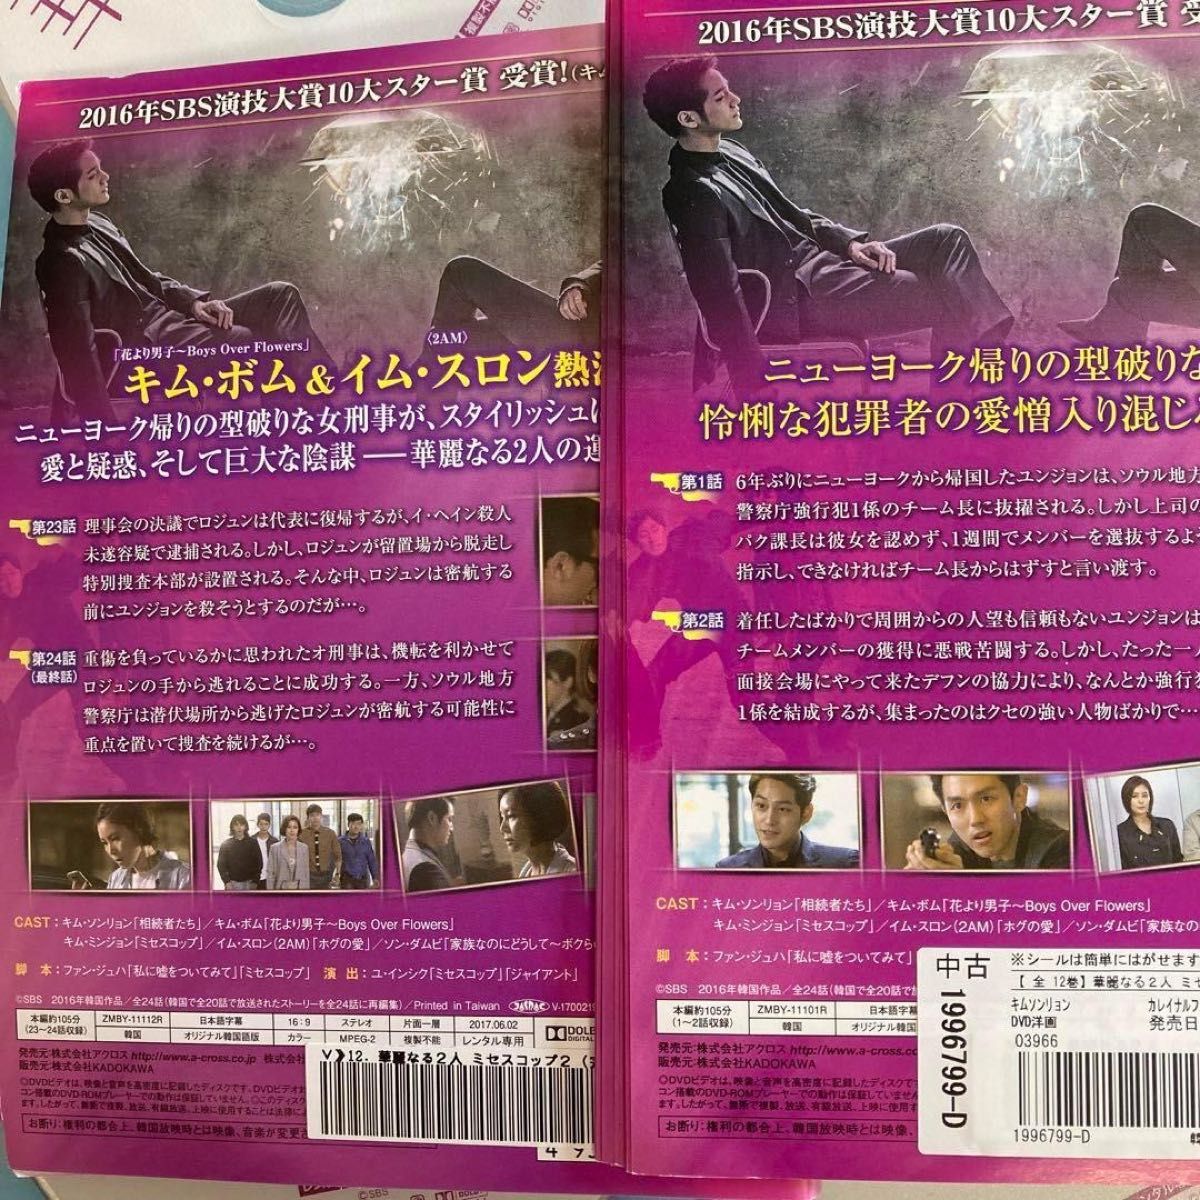 華麗なる2人 ミセスコップ2 全12巻 DVD 韓国ドラマ